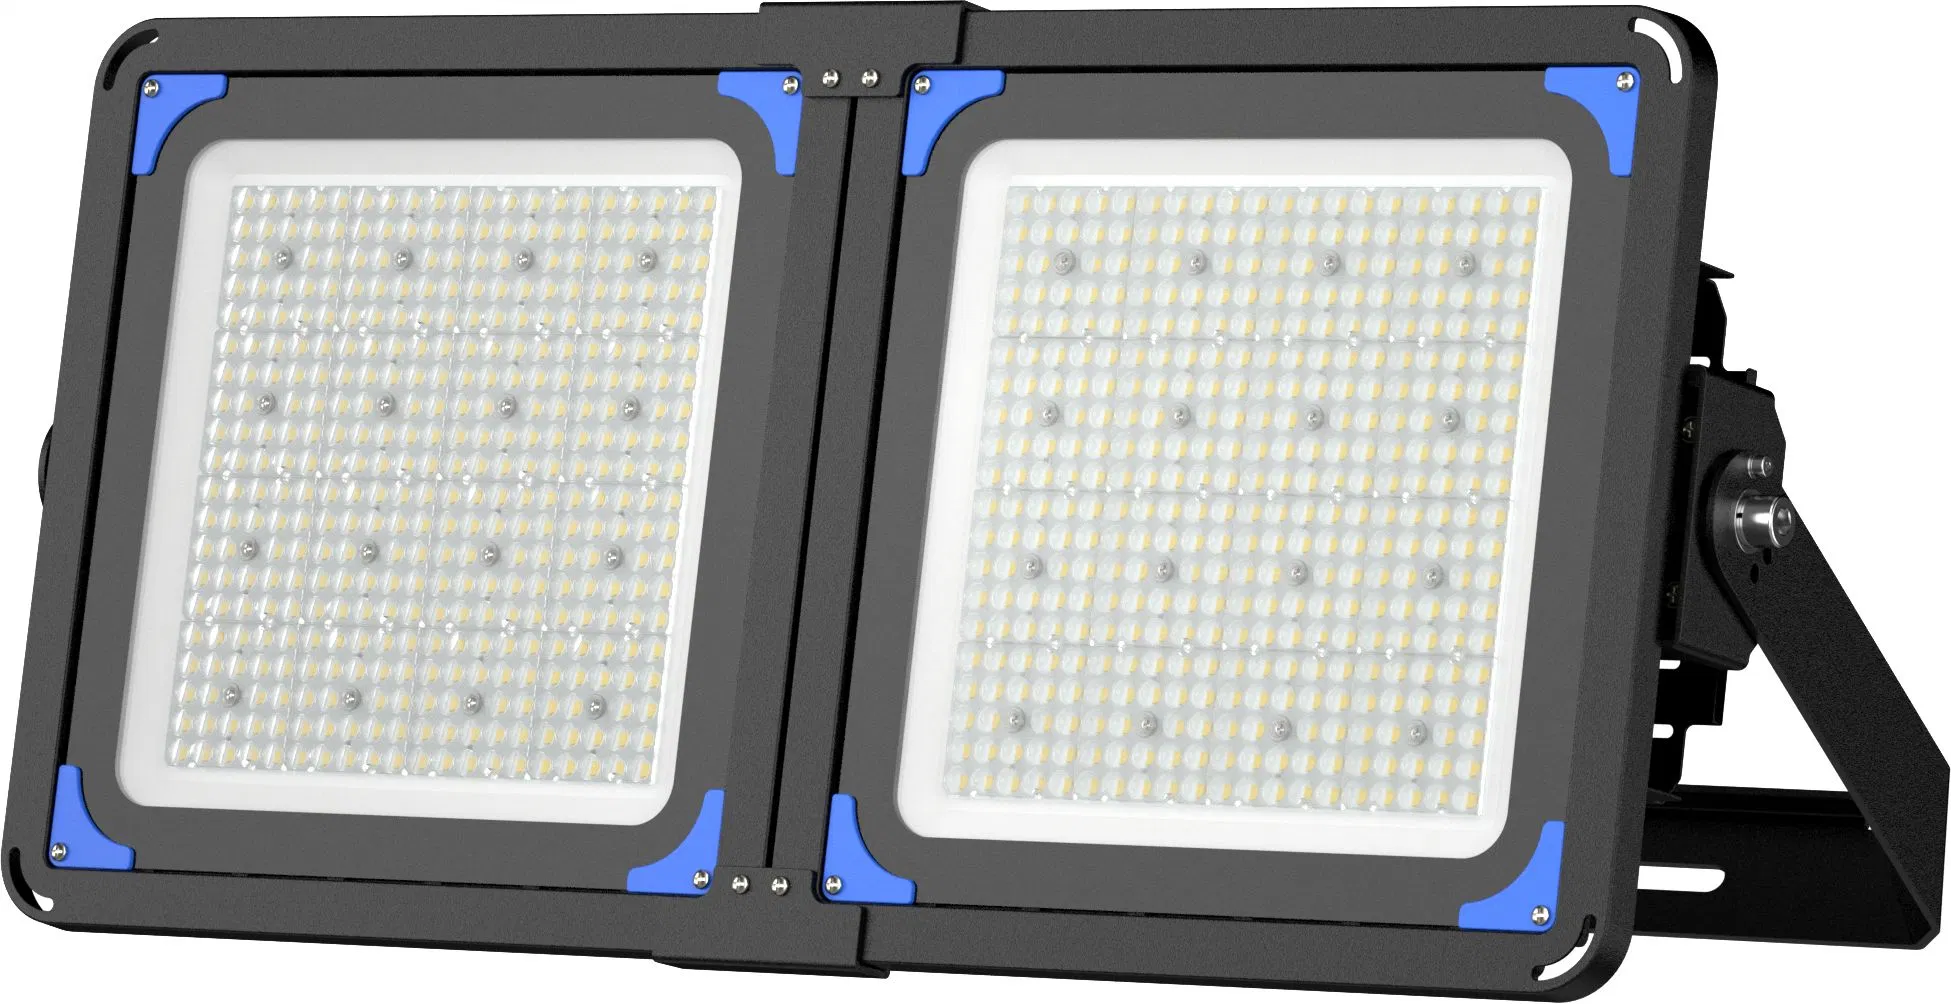 637*462*134 ослепительно белый Znkj картонной упаковке + пена другие лампы Project-Light светодиодного освещения